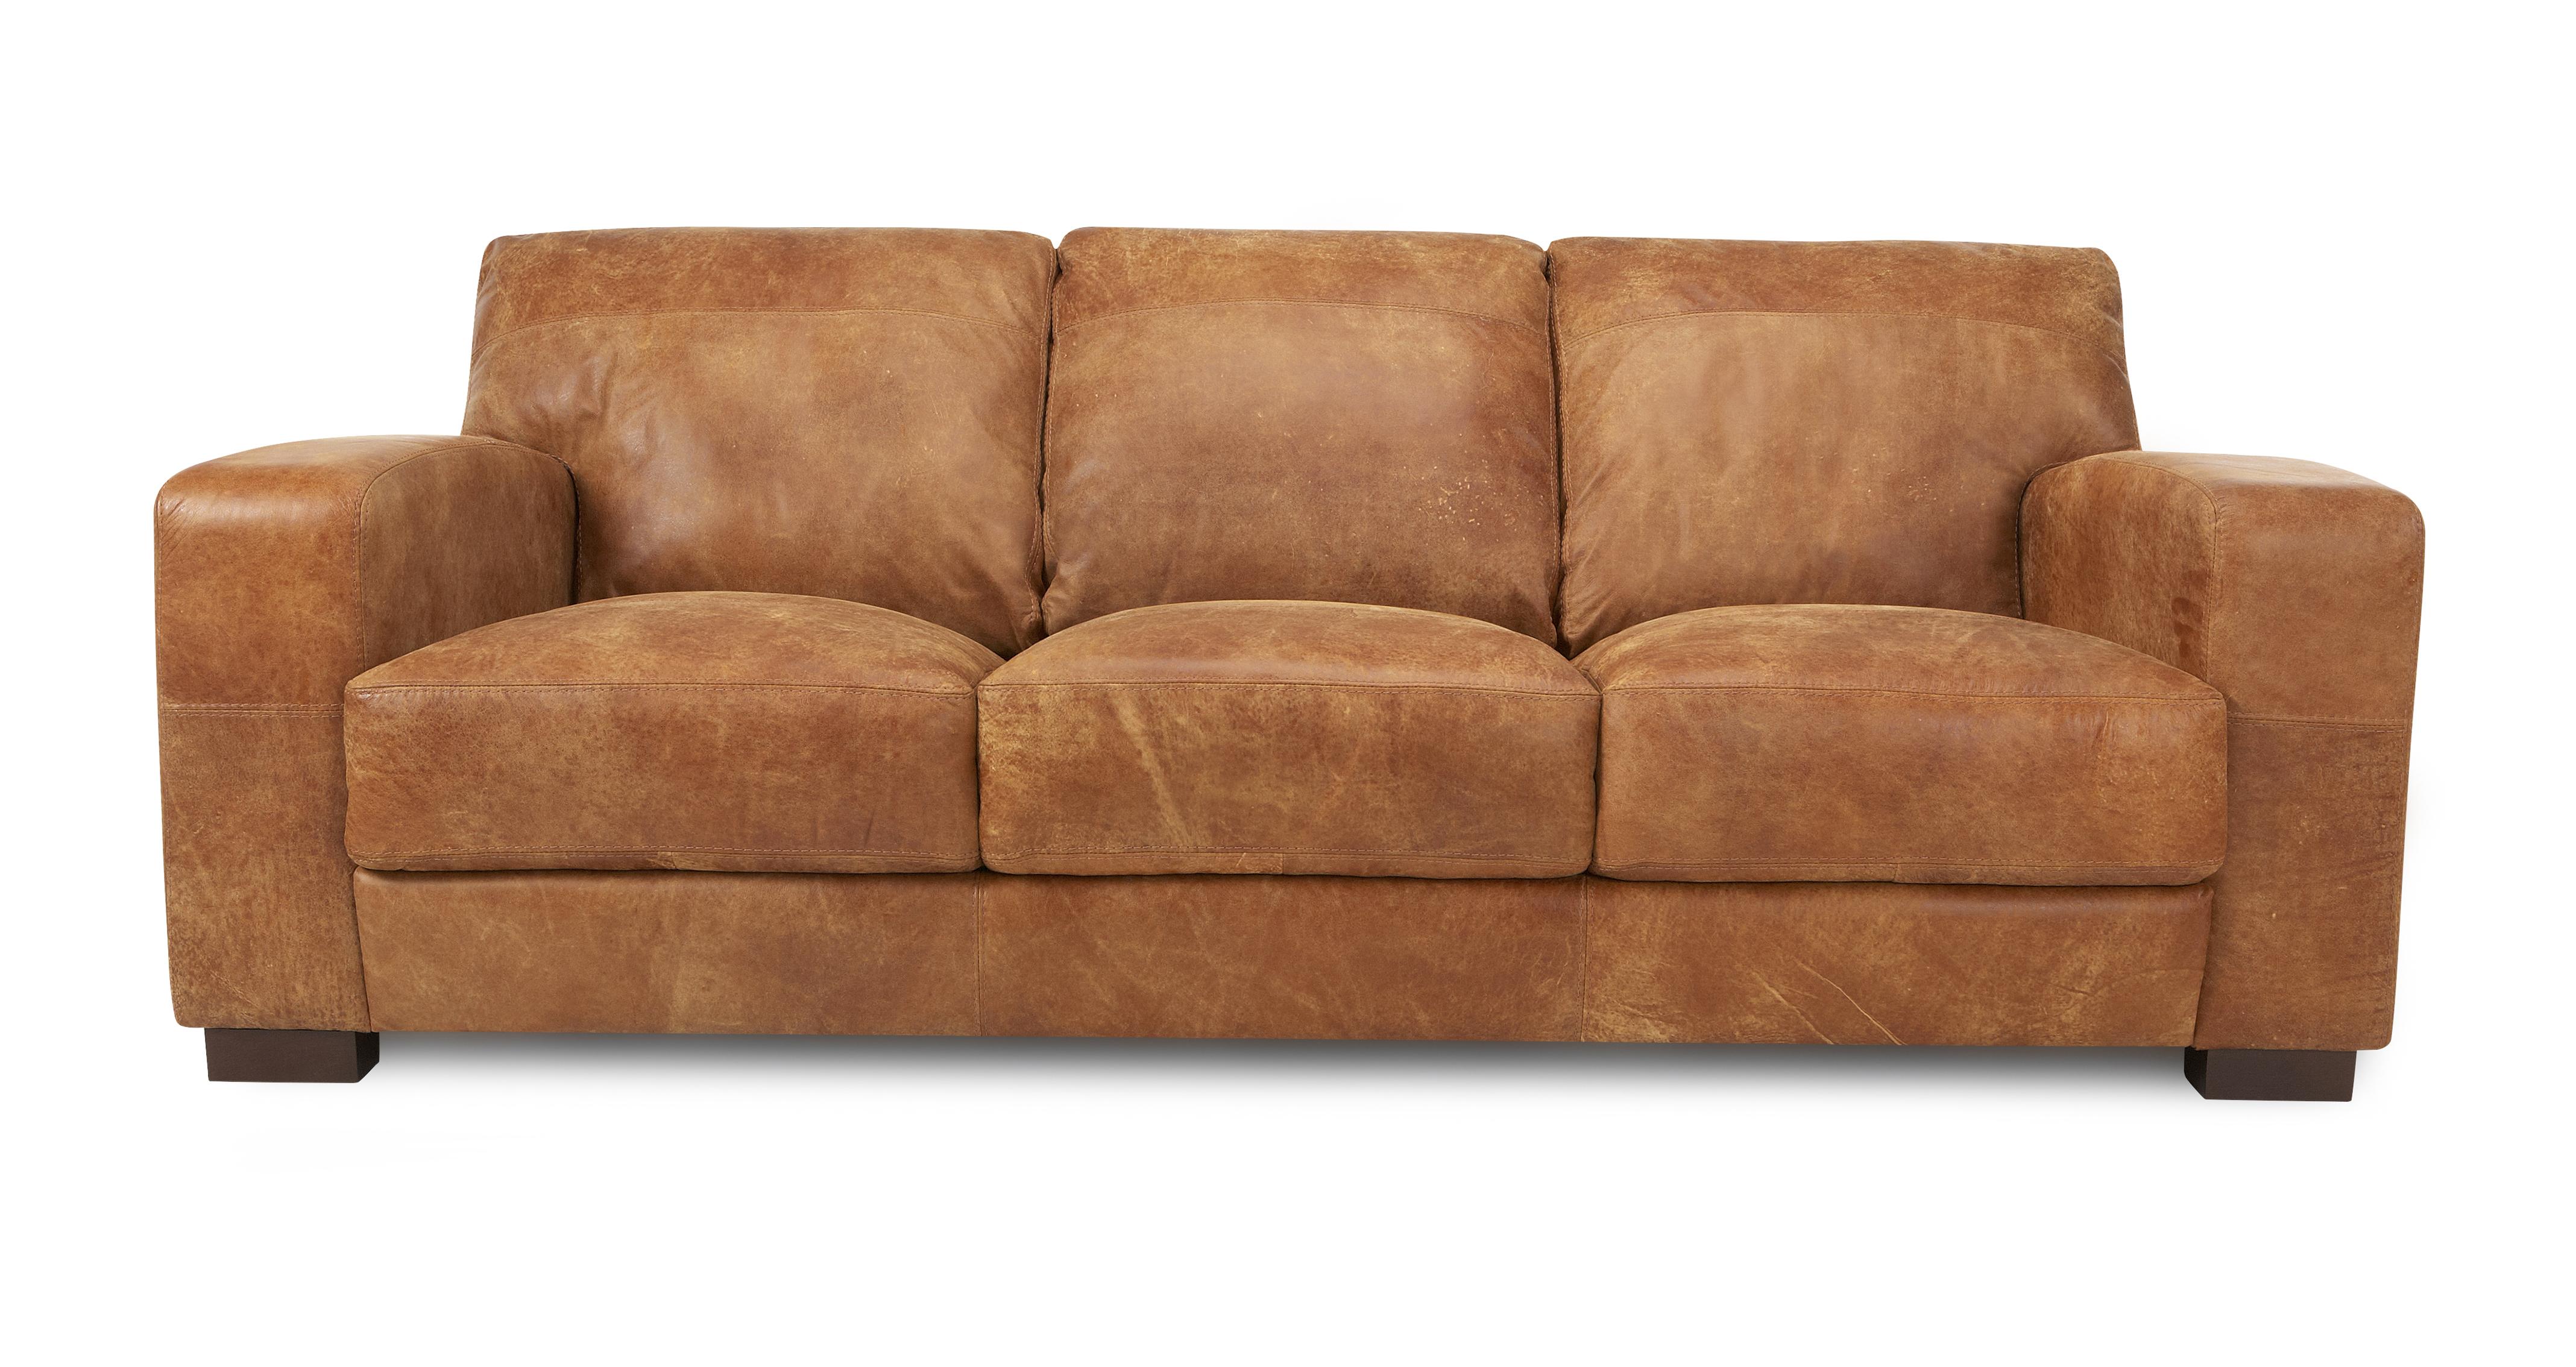 ashley pure leather sofa 3 seater